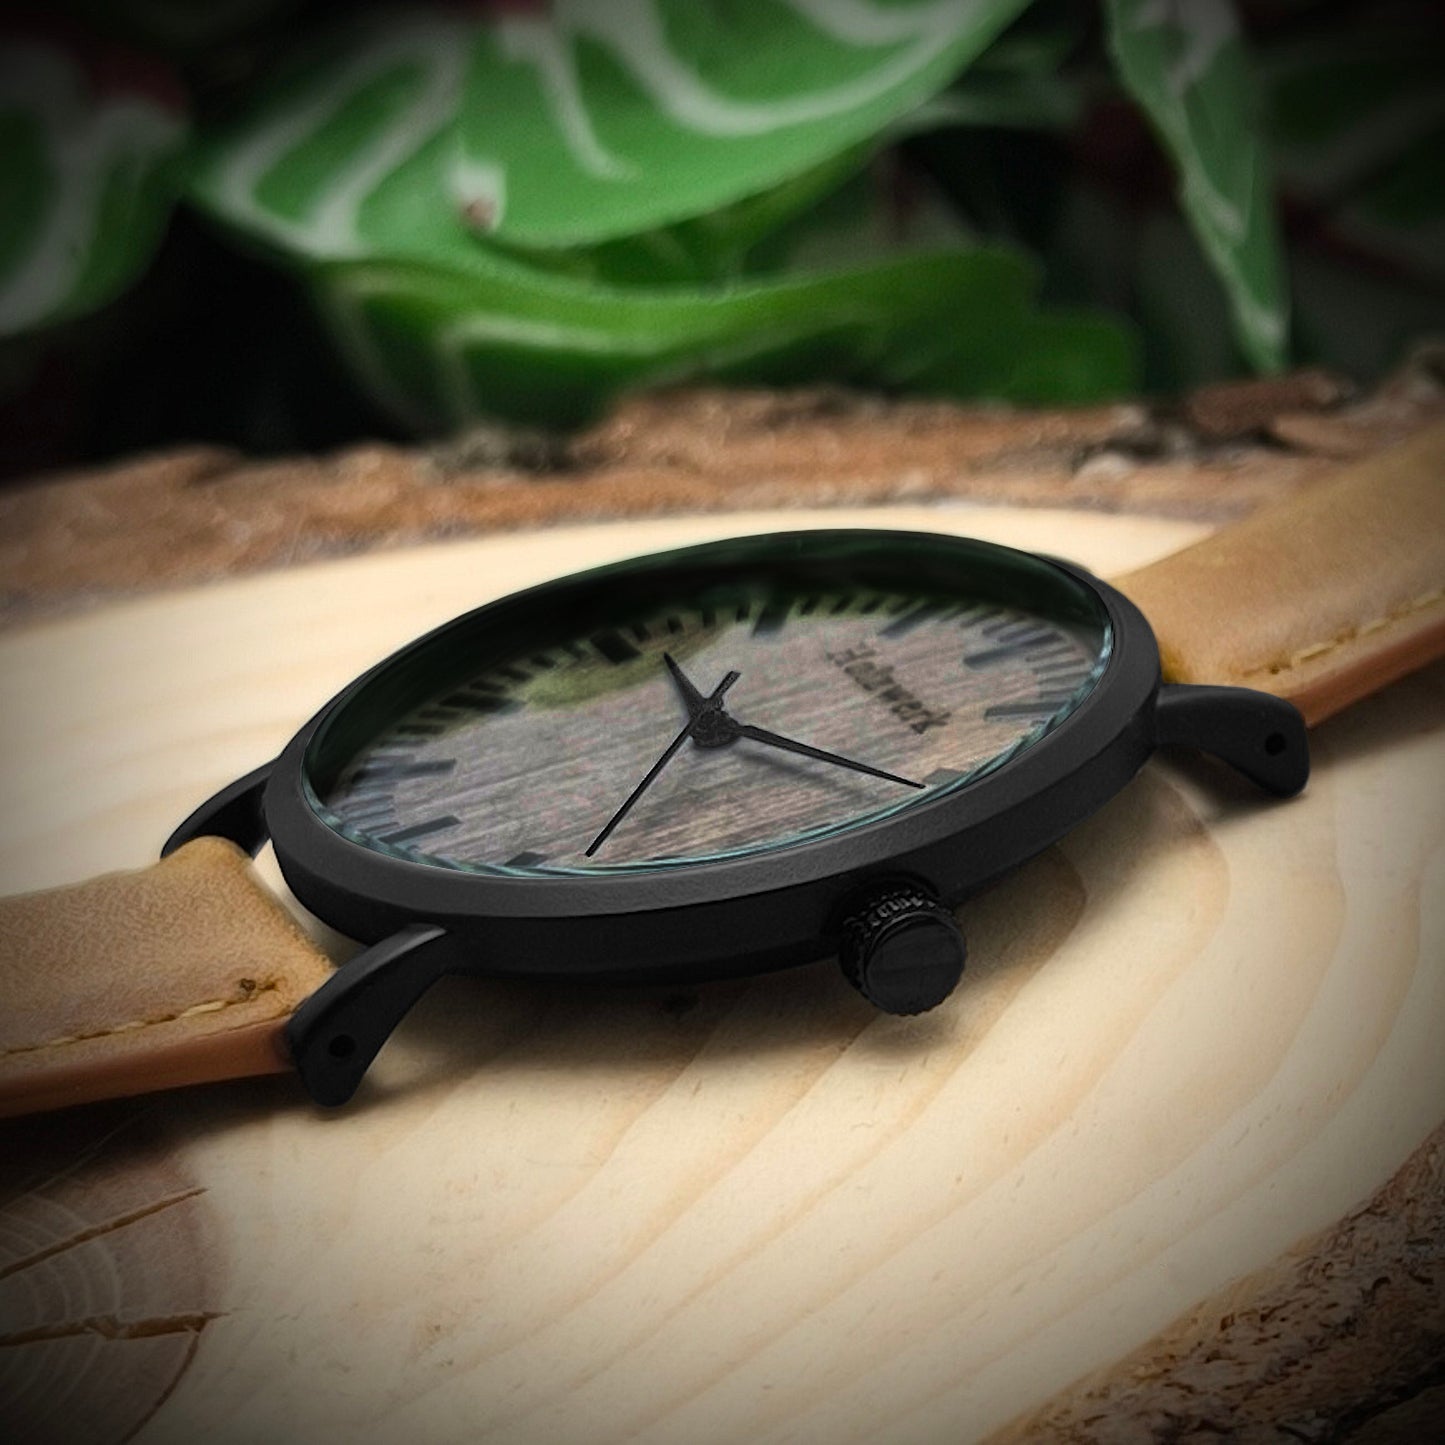 Holzwerk NECKAR Damen und Herren Leder & Edelstahl Holz Armband Uhr, Damenuhr, Herrenuhr, flache 4 mm Armbanduhr, Holzuhr, braun, schwarz, seitlich liegend